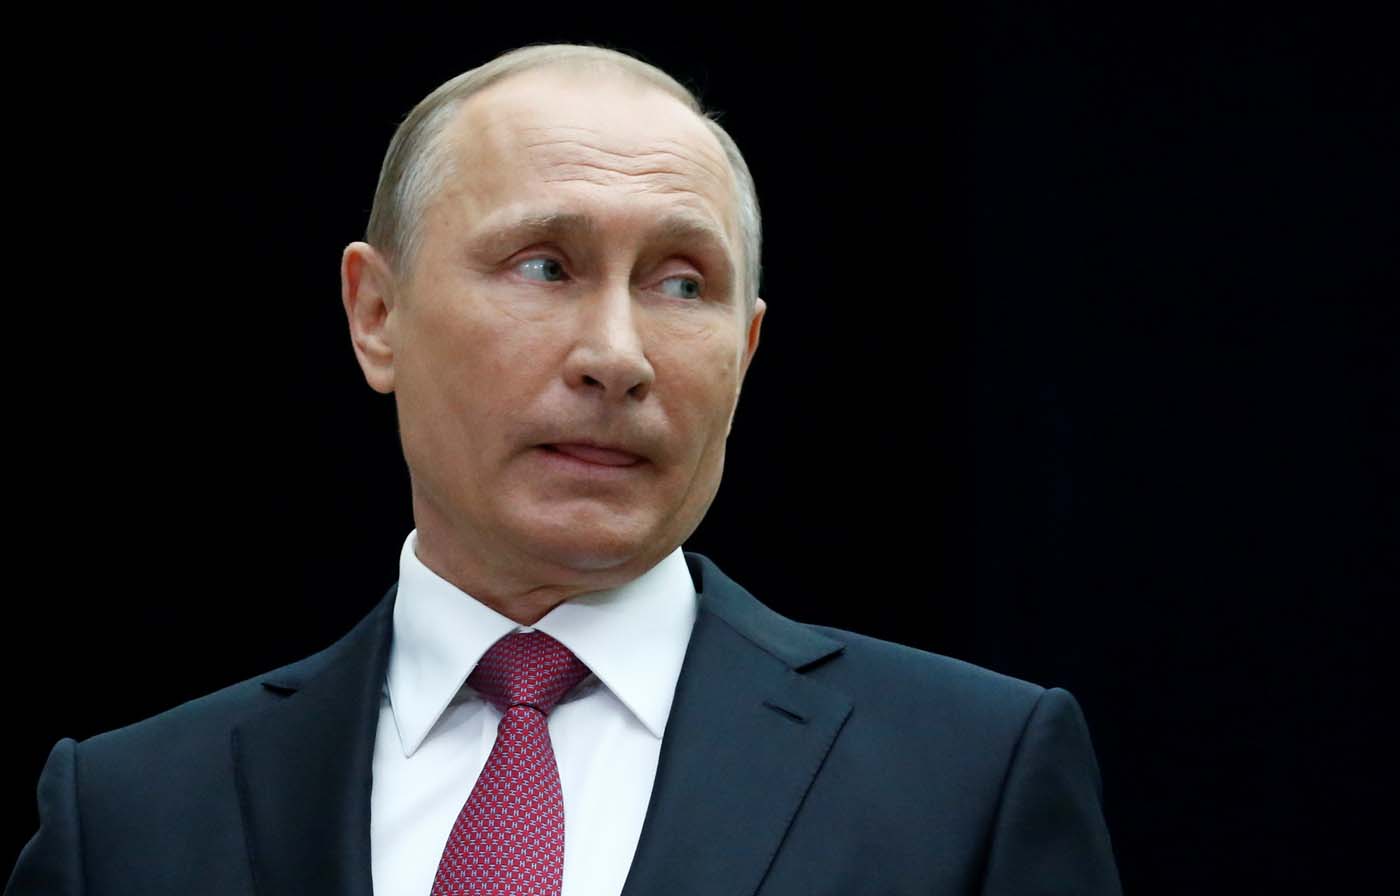 El FBI trató de obtener información sobre Putin de magnates rusos